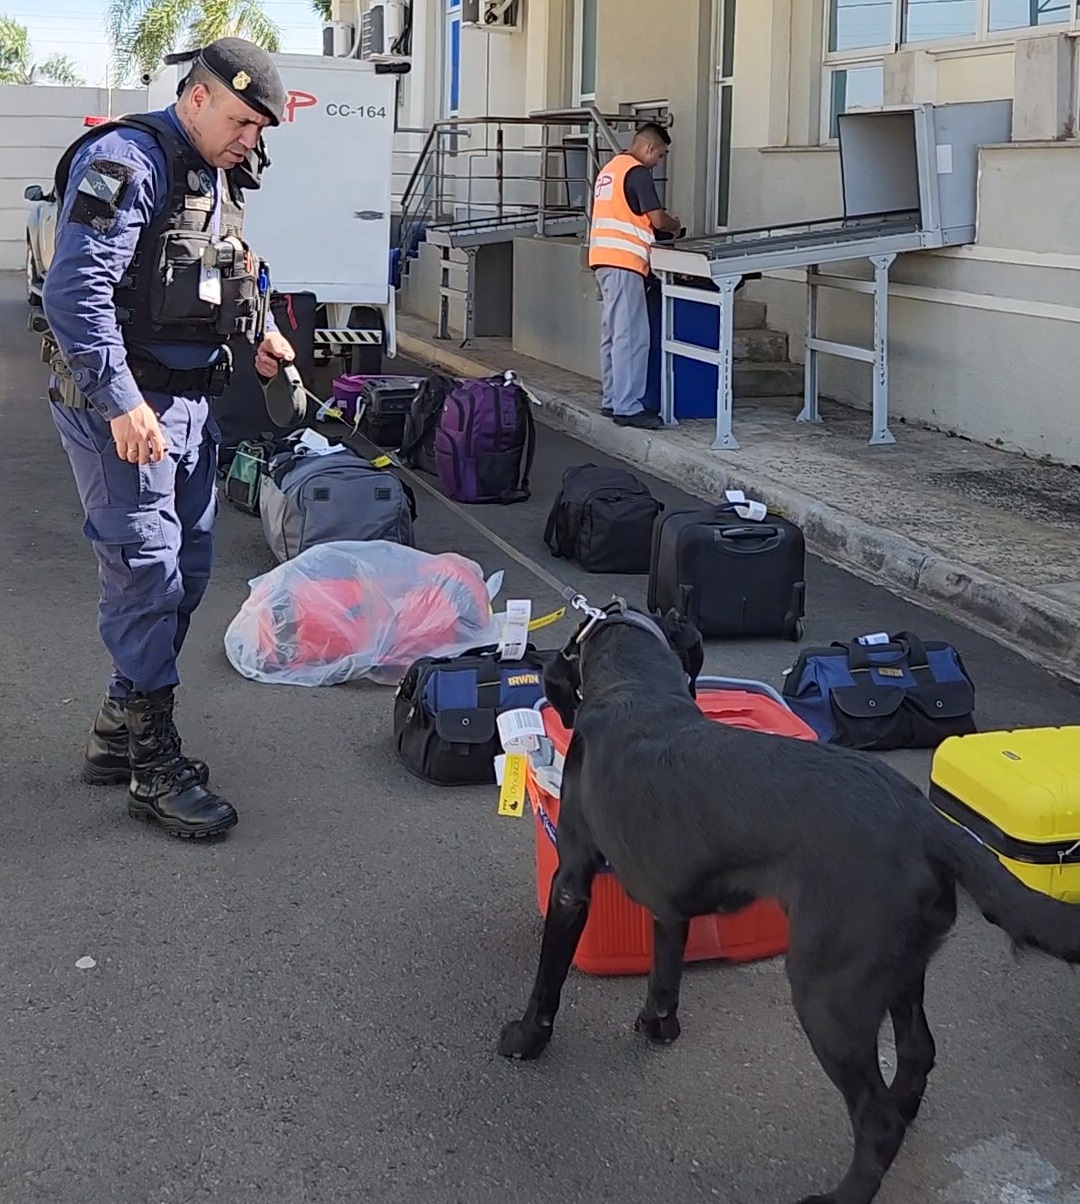 Parceria com a Polícia Federal vai intensificar a fiscalização de bagagens no aeroporto de Ponta Grossa